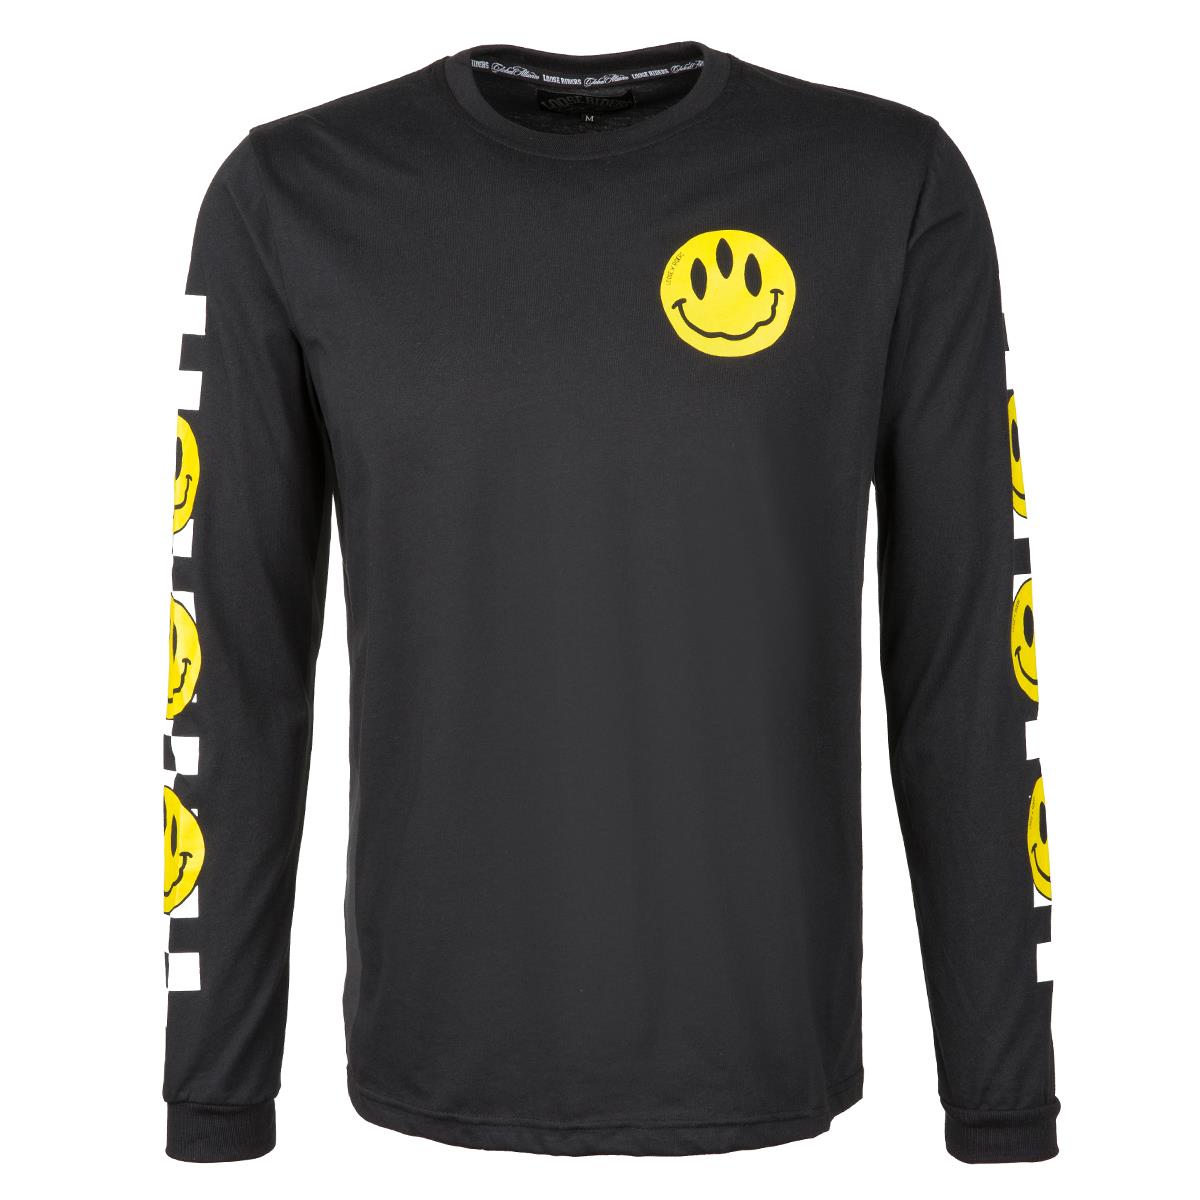 Loose Riders Sweatshirt  Stoked! - Black/White/Yellow